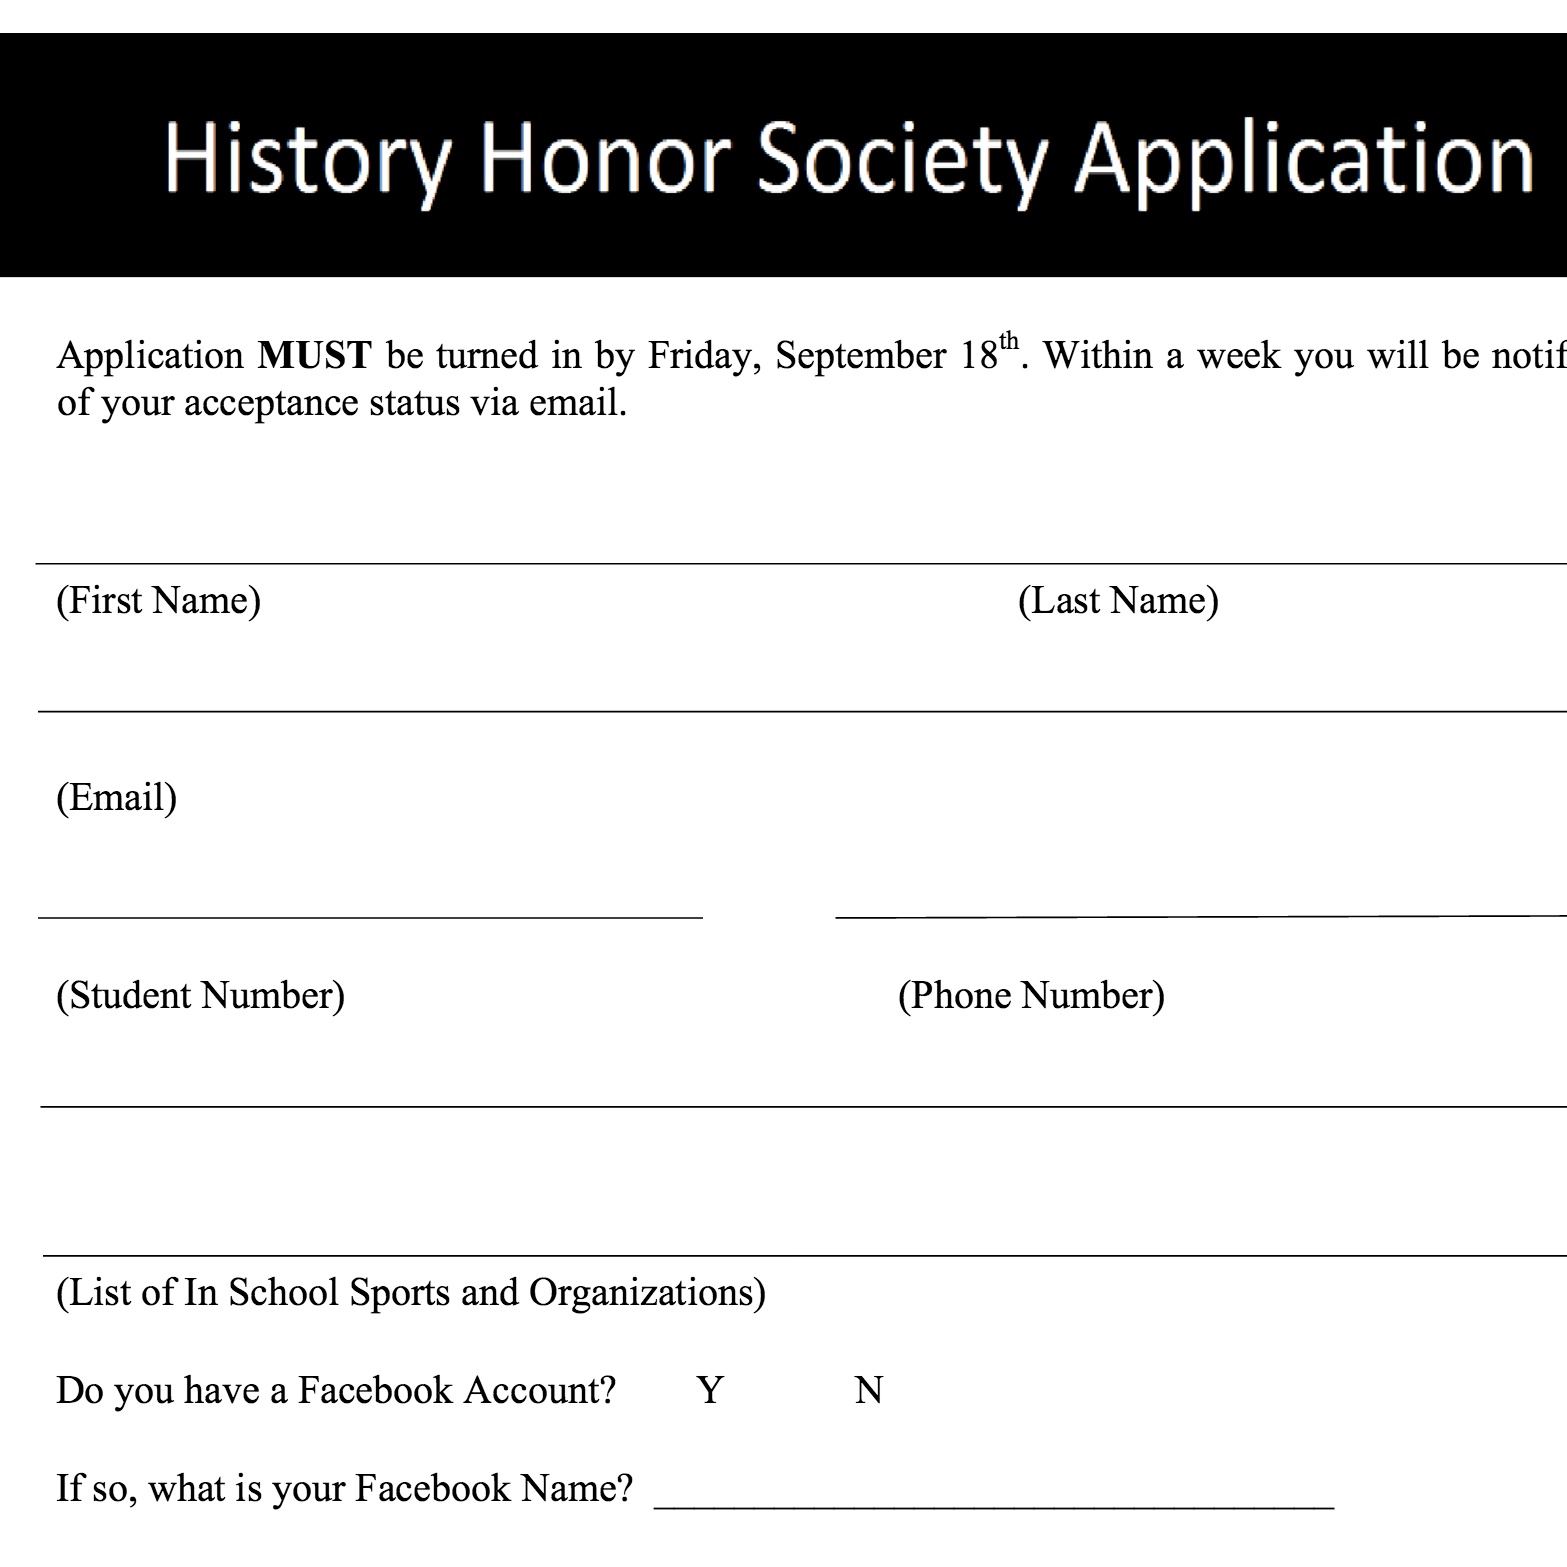 History Honor Society application